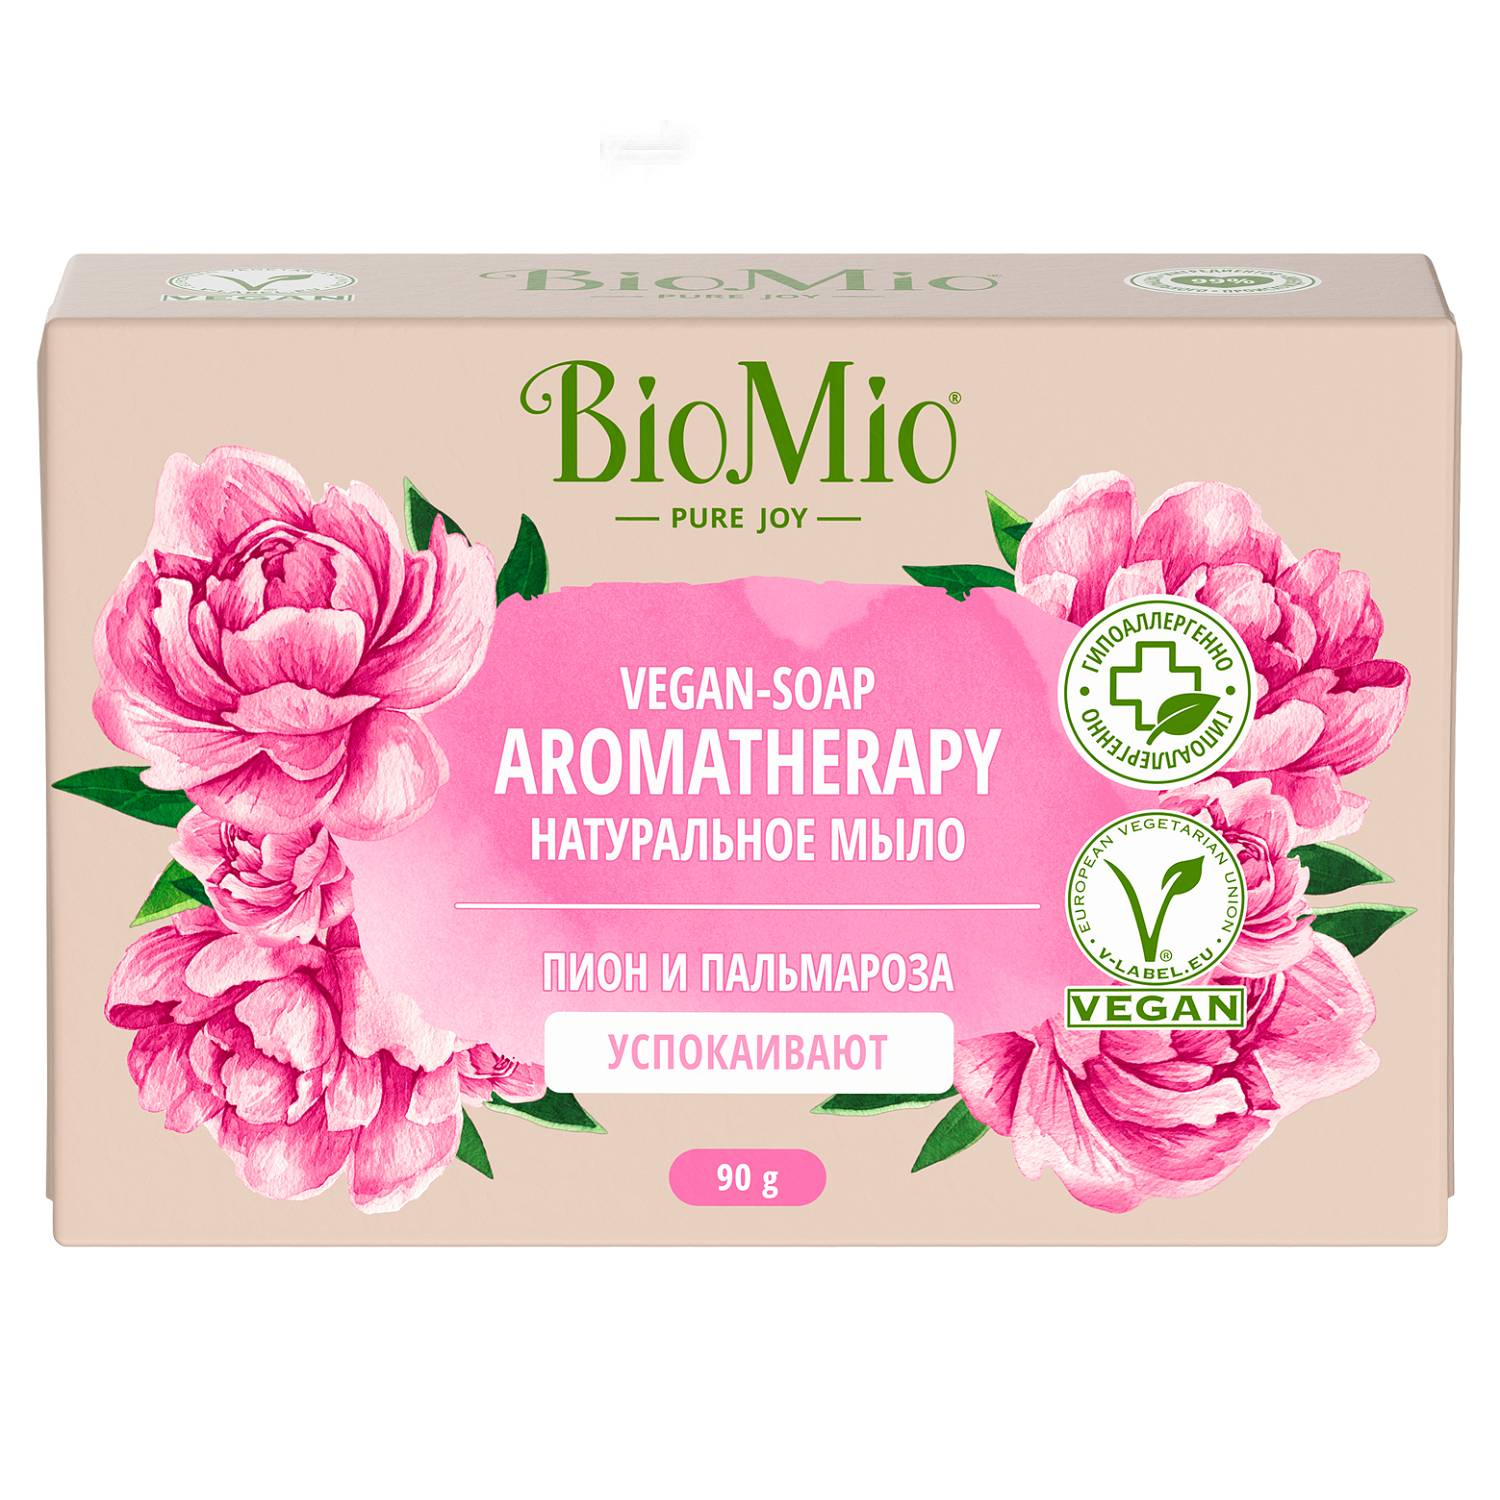 BioMio Натуральное мыло Пион и пальмароза Vegan Soap Aromatherapy, 90 г (BioMio, Мыло) biomio bio soap натуральное мыло пион и пальмароза 3шт по 90 г